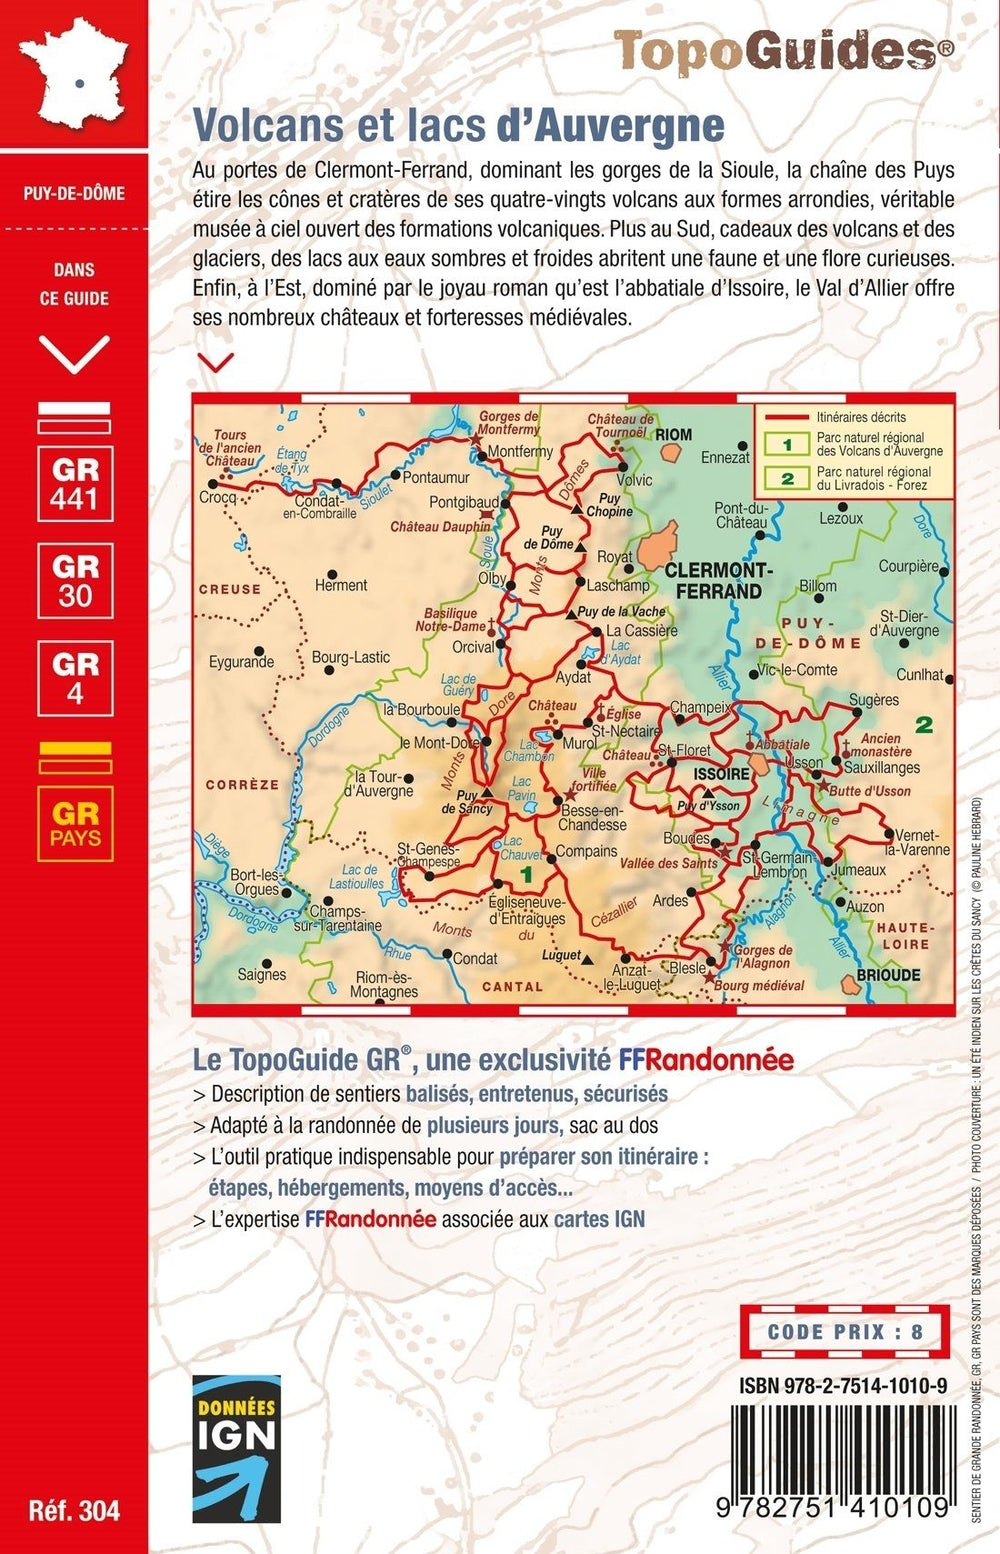 Topoguide de randonnée - Volcans & lacs d'Auvergne, Pays du Val d'Allier GR4, GR30, GR441 | FFR guide de randonnée FFR - Fédération Française de Randonnée 